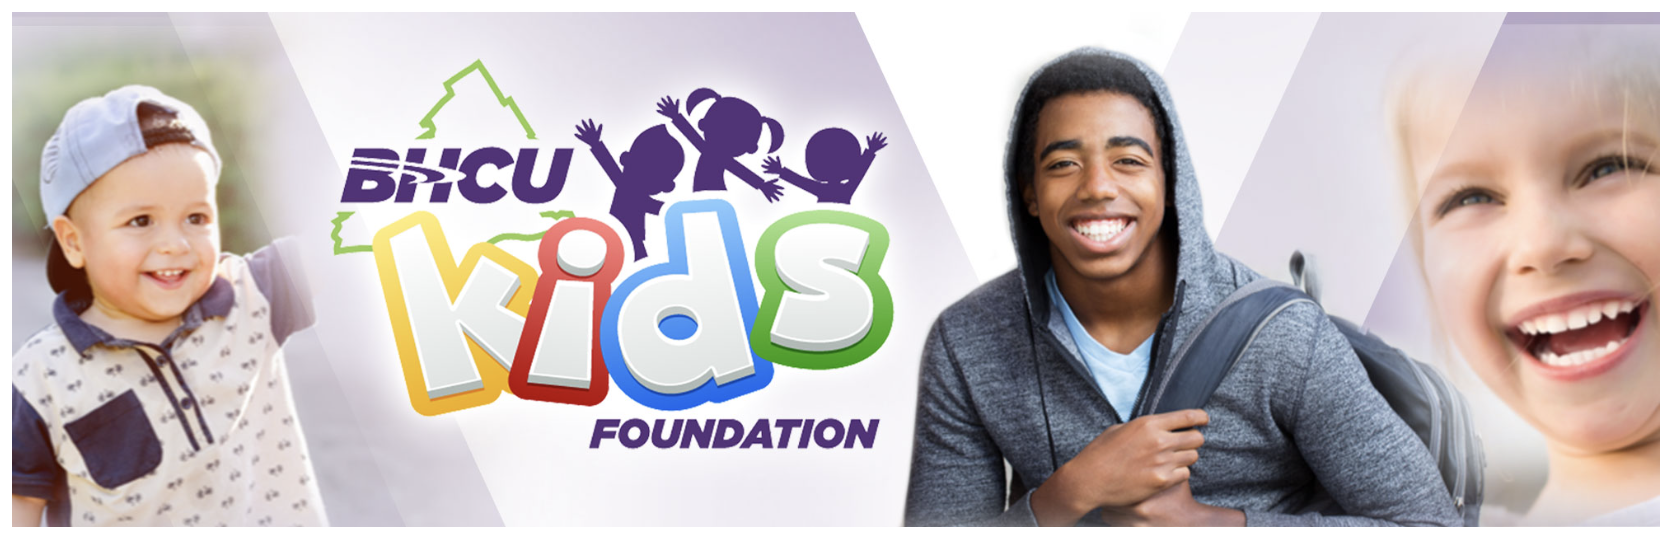 BHCU Kids Foundation